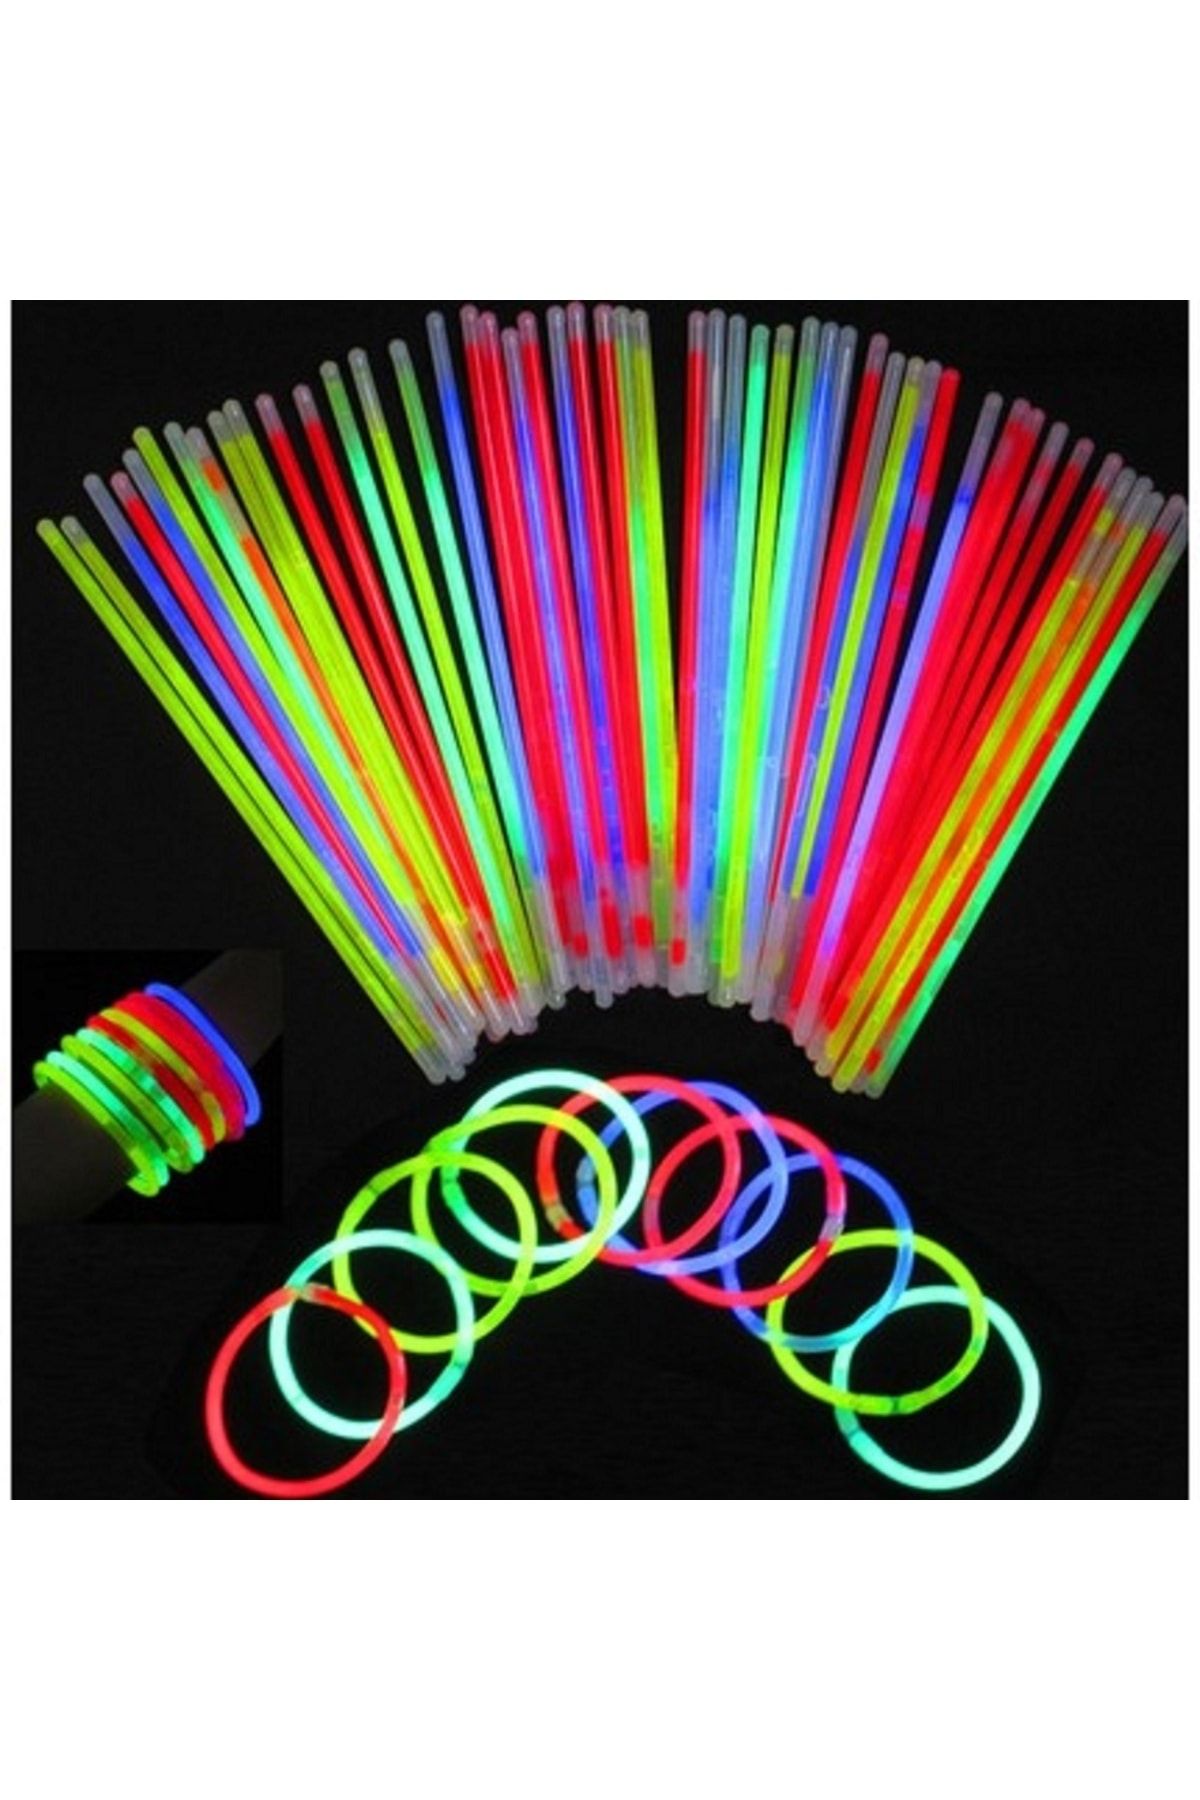 EventPartyStore Fosforlu Kırılan Çubuk / Glow Stick 100'lü